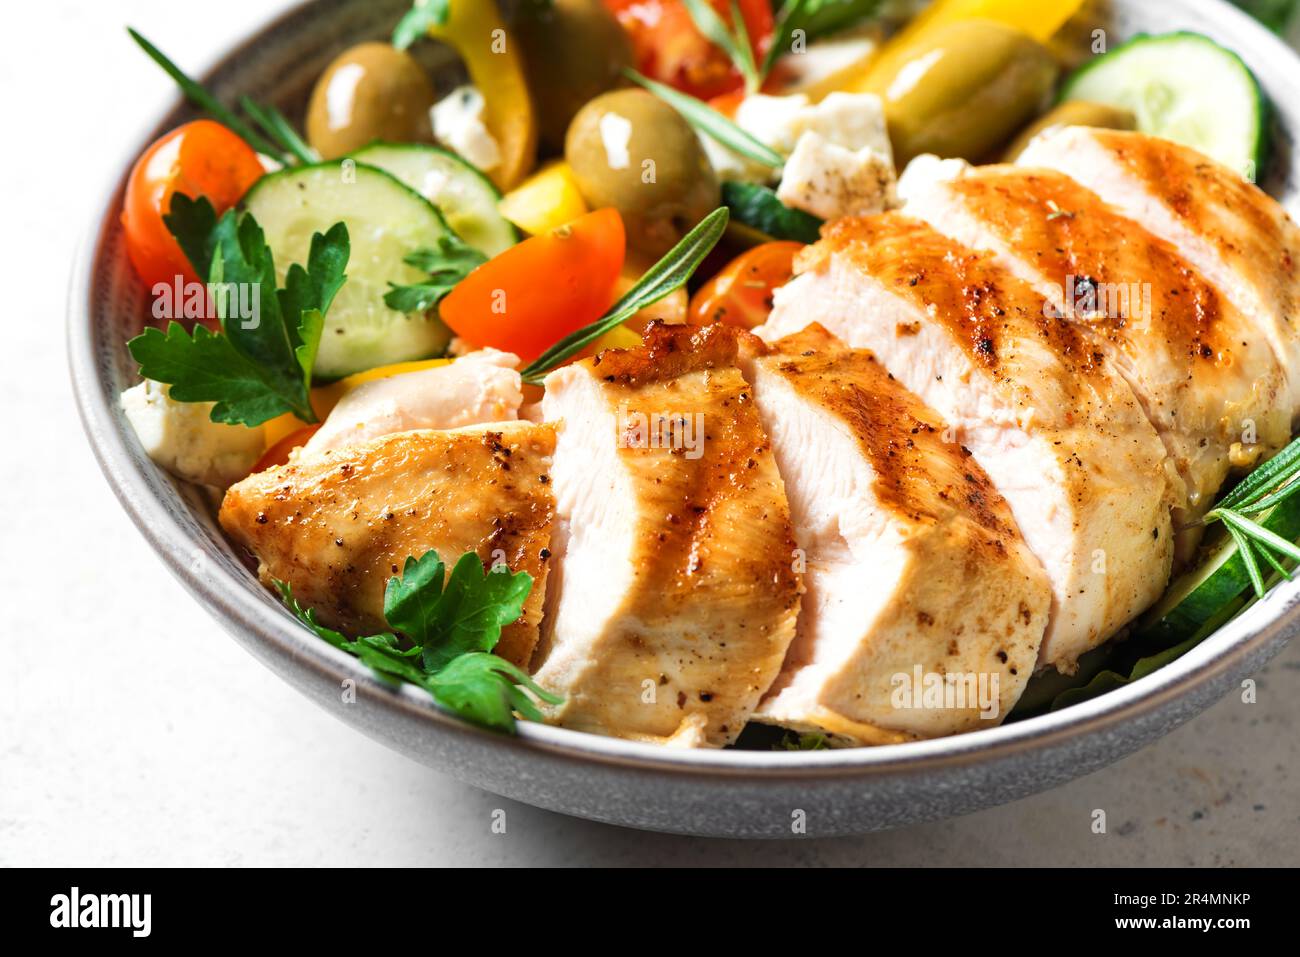 Filete de pollo a la parrilla y ensalada griega de verduras frescas de cerca. Saludable keto, comida cetogénica: Carne de pechuga de pollo asada, aceitunas, queso feta, verduras Foto de stock